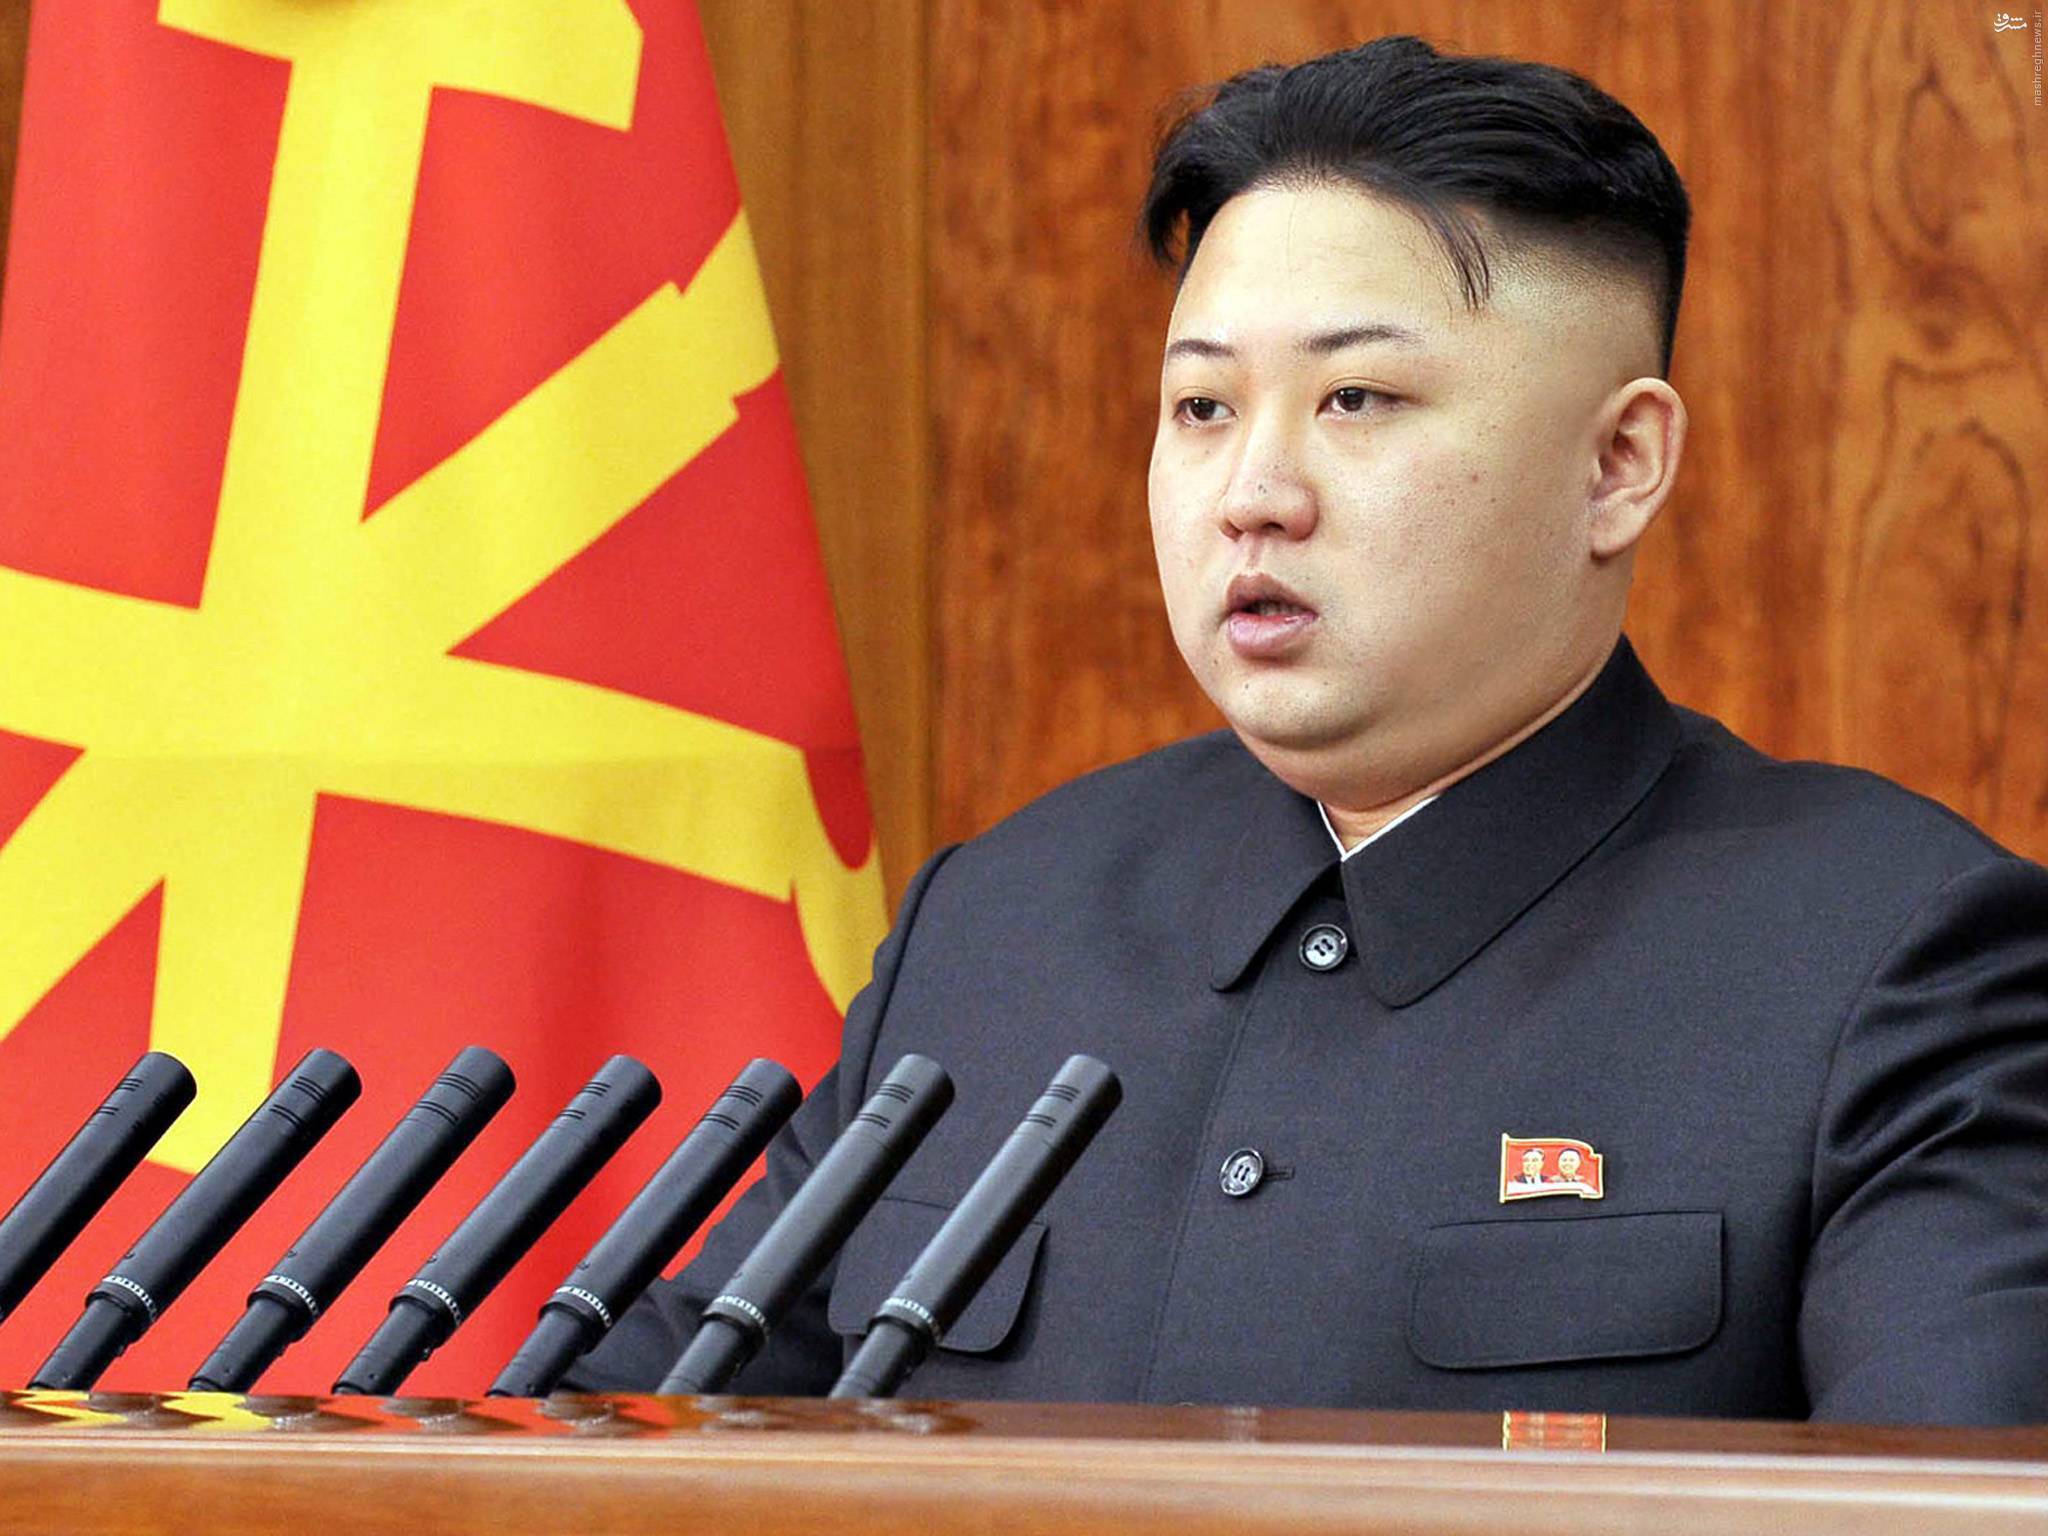 کره شمالی خودکشی را ممنوع اعلام کرد